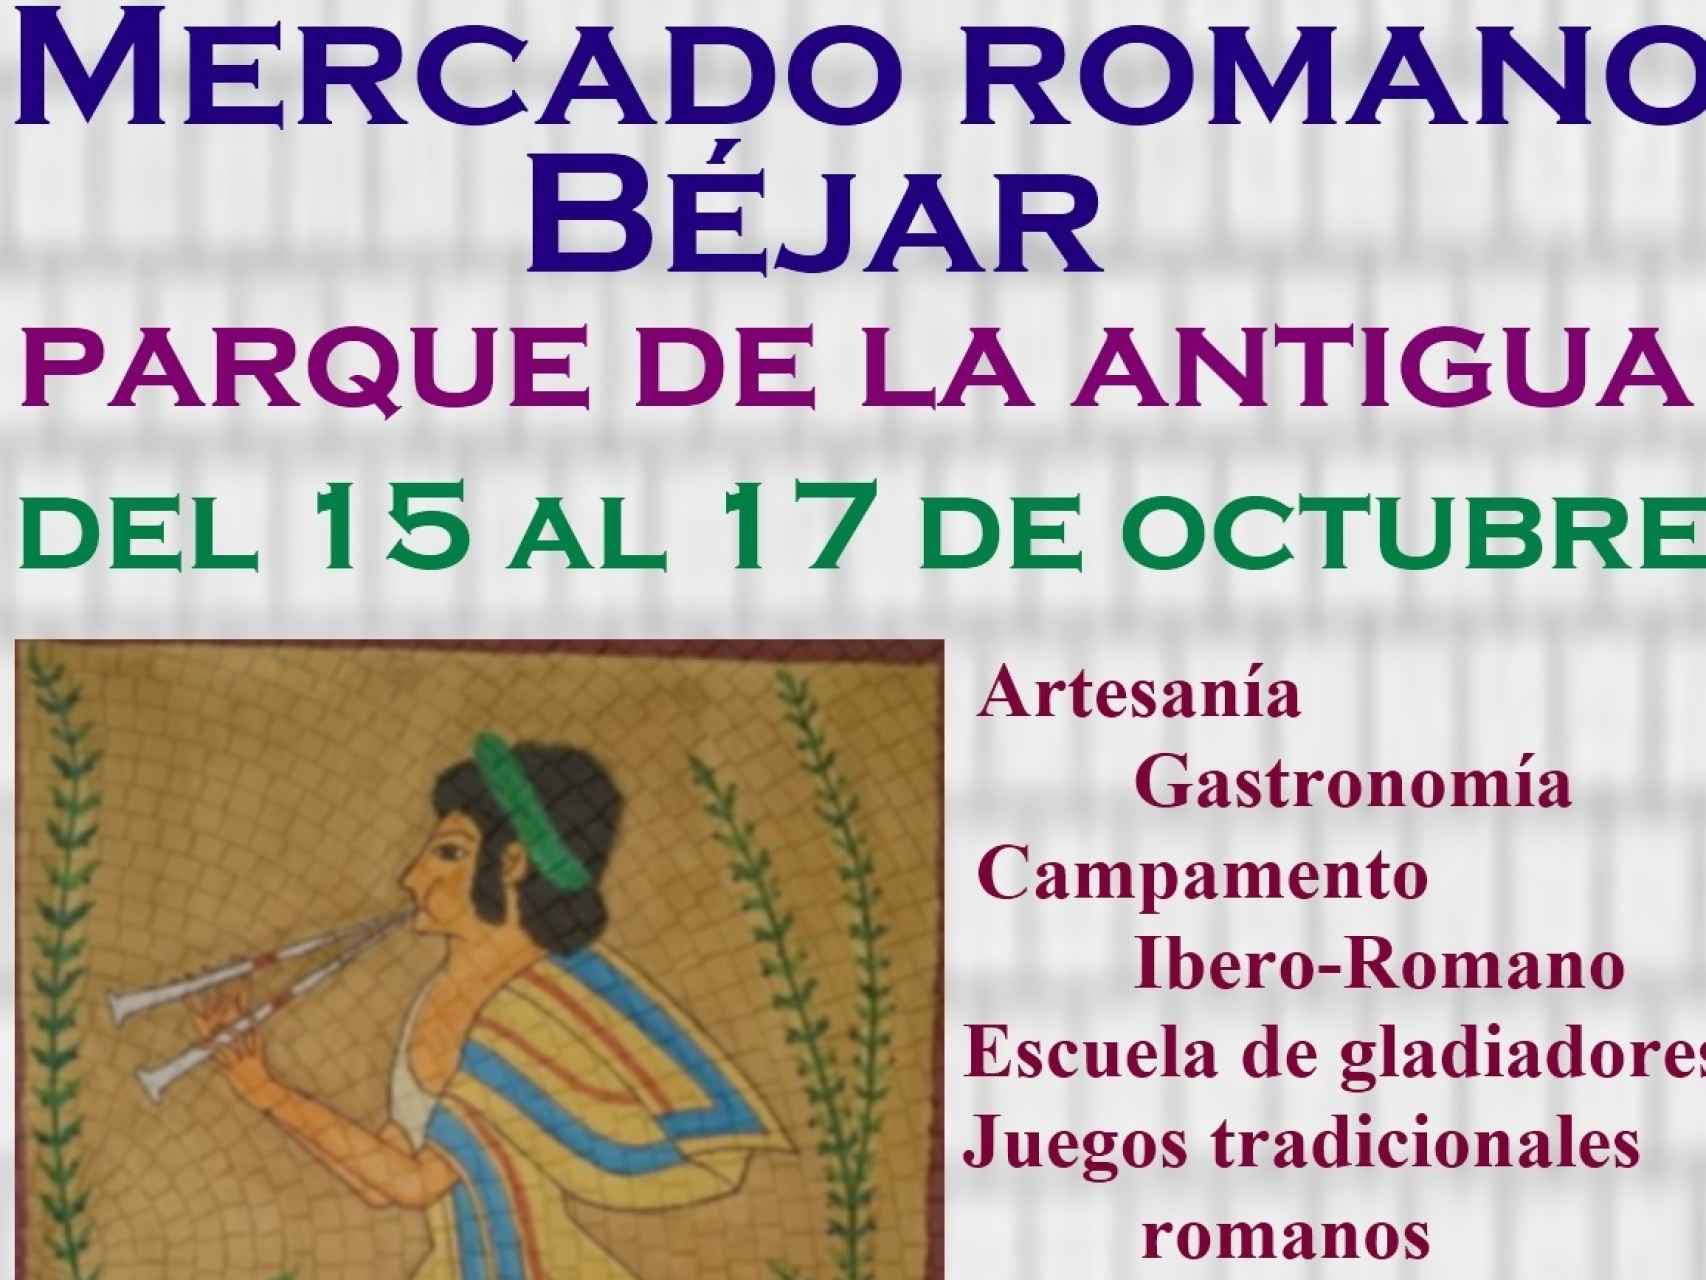 Béjar celebra el Mercado Romano en el parque de La Antigua, del 15 al 17 de octubre